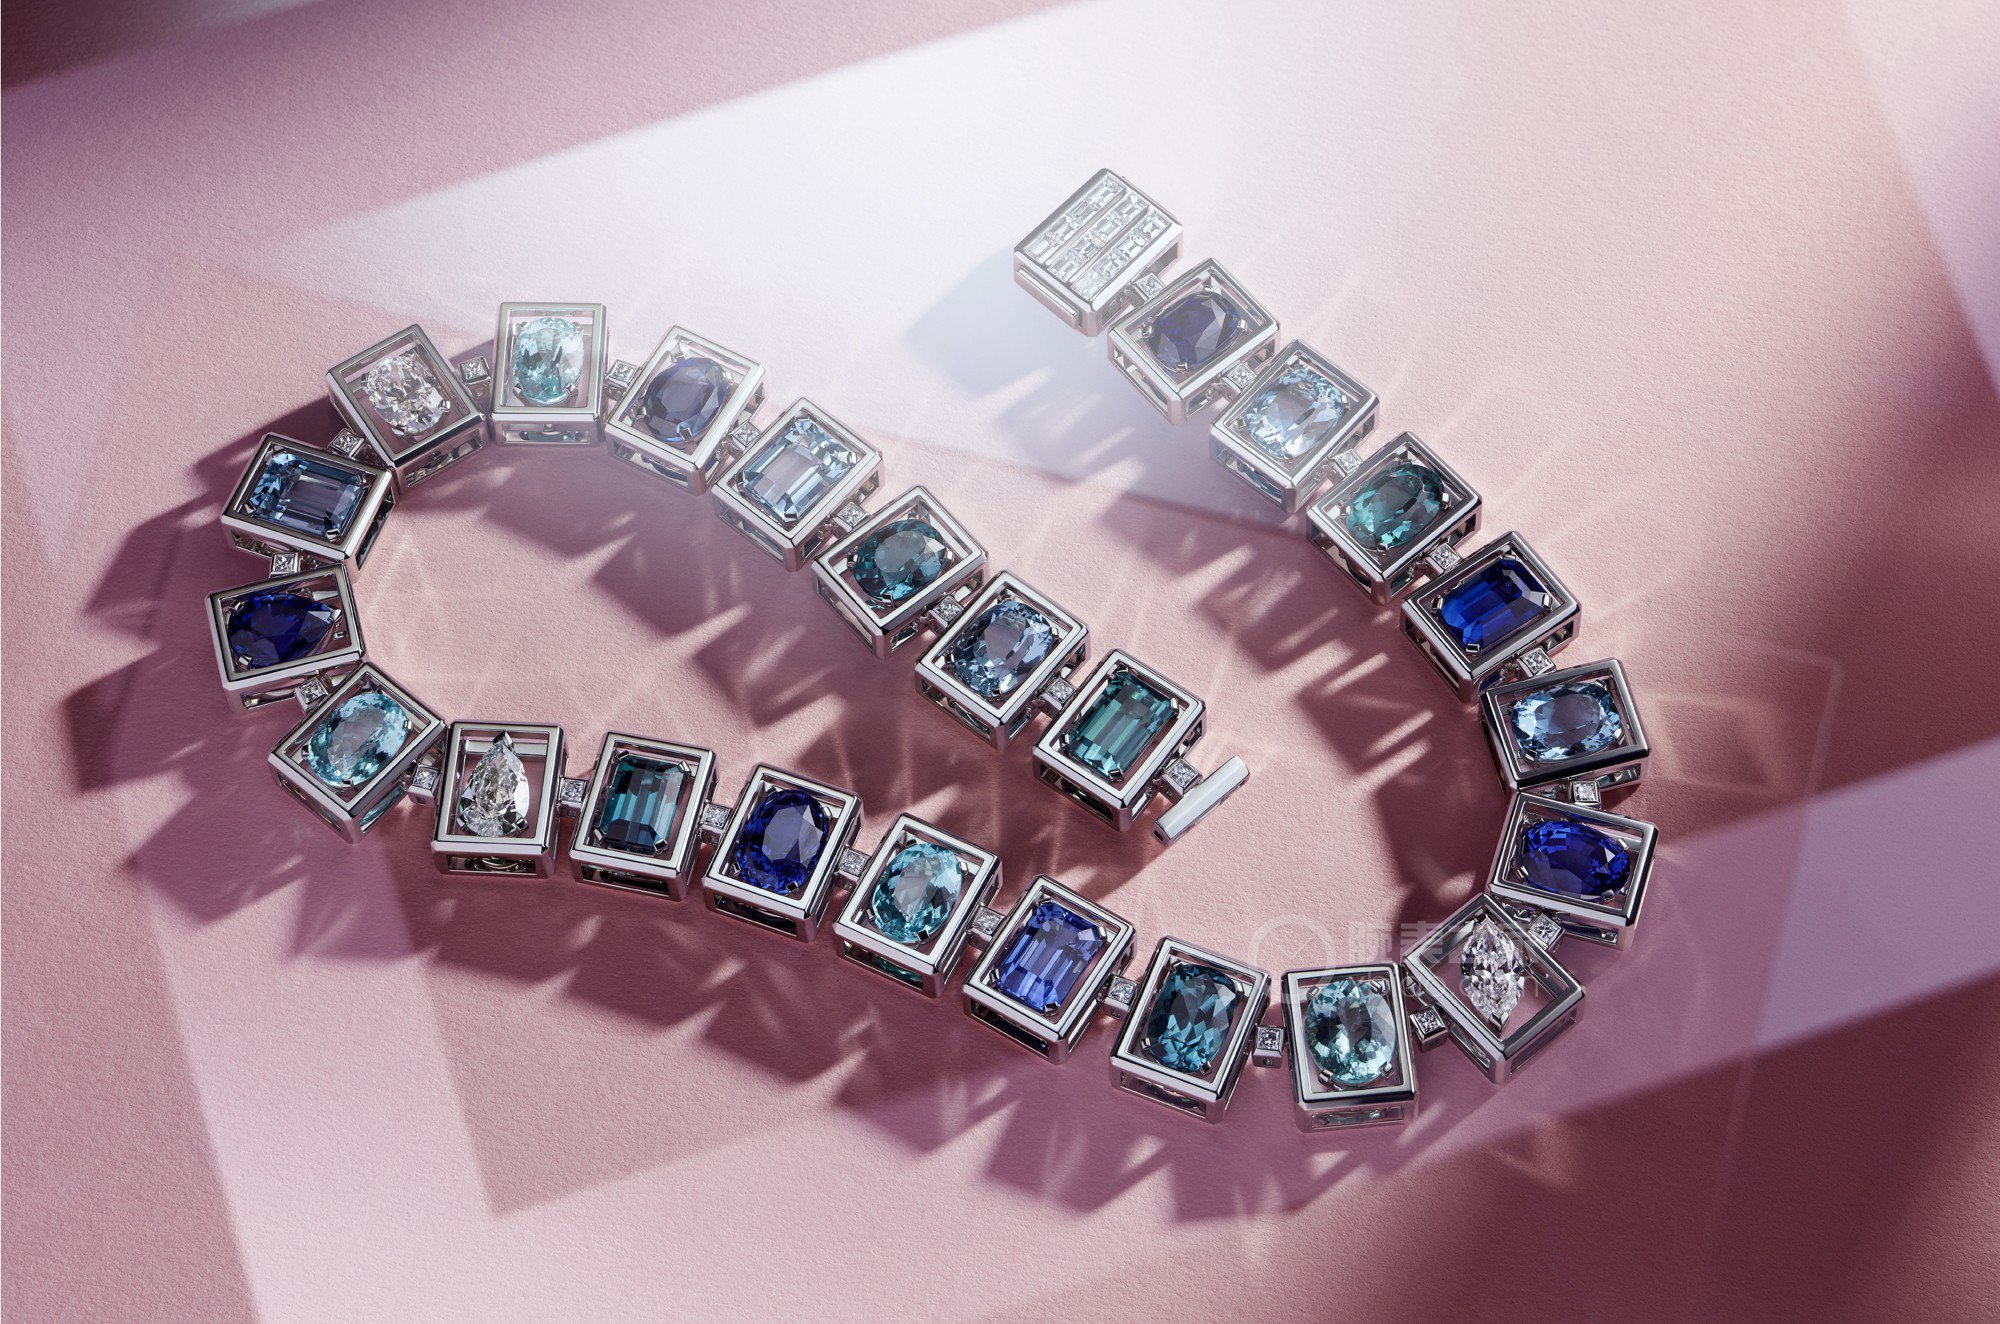 蒂芙尼BLUE BOOK高级珠宝铂金镶嵌蓝宝石、蓝色铜锂碧玺、蓝色碧玺、海蓝宝石及钻石项链项链